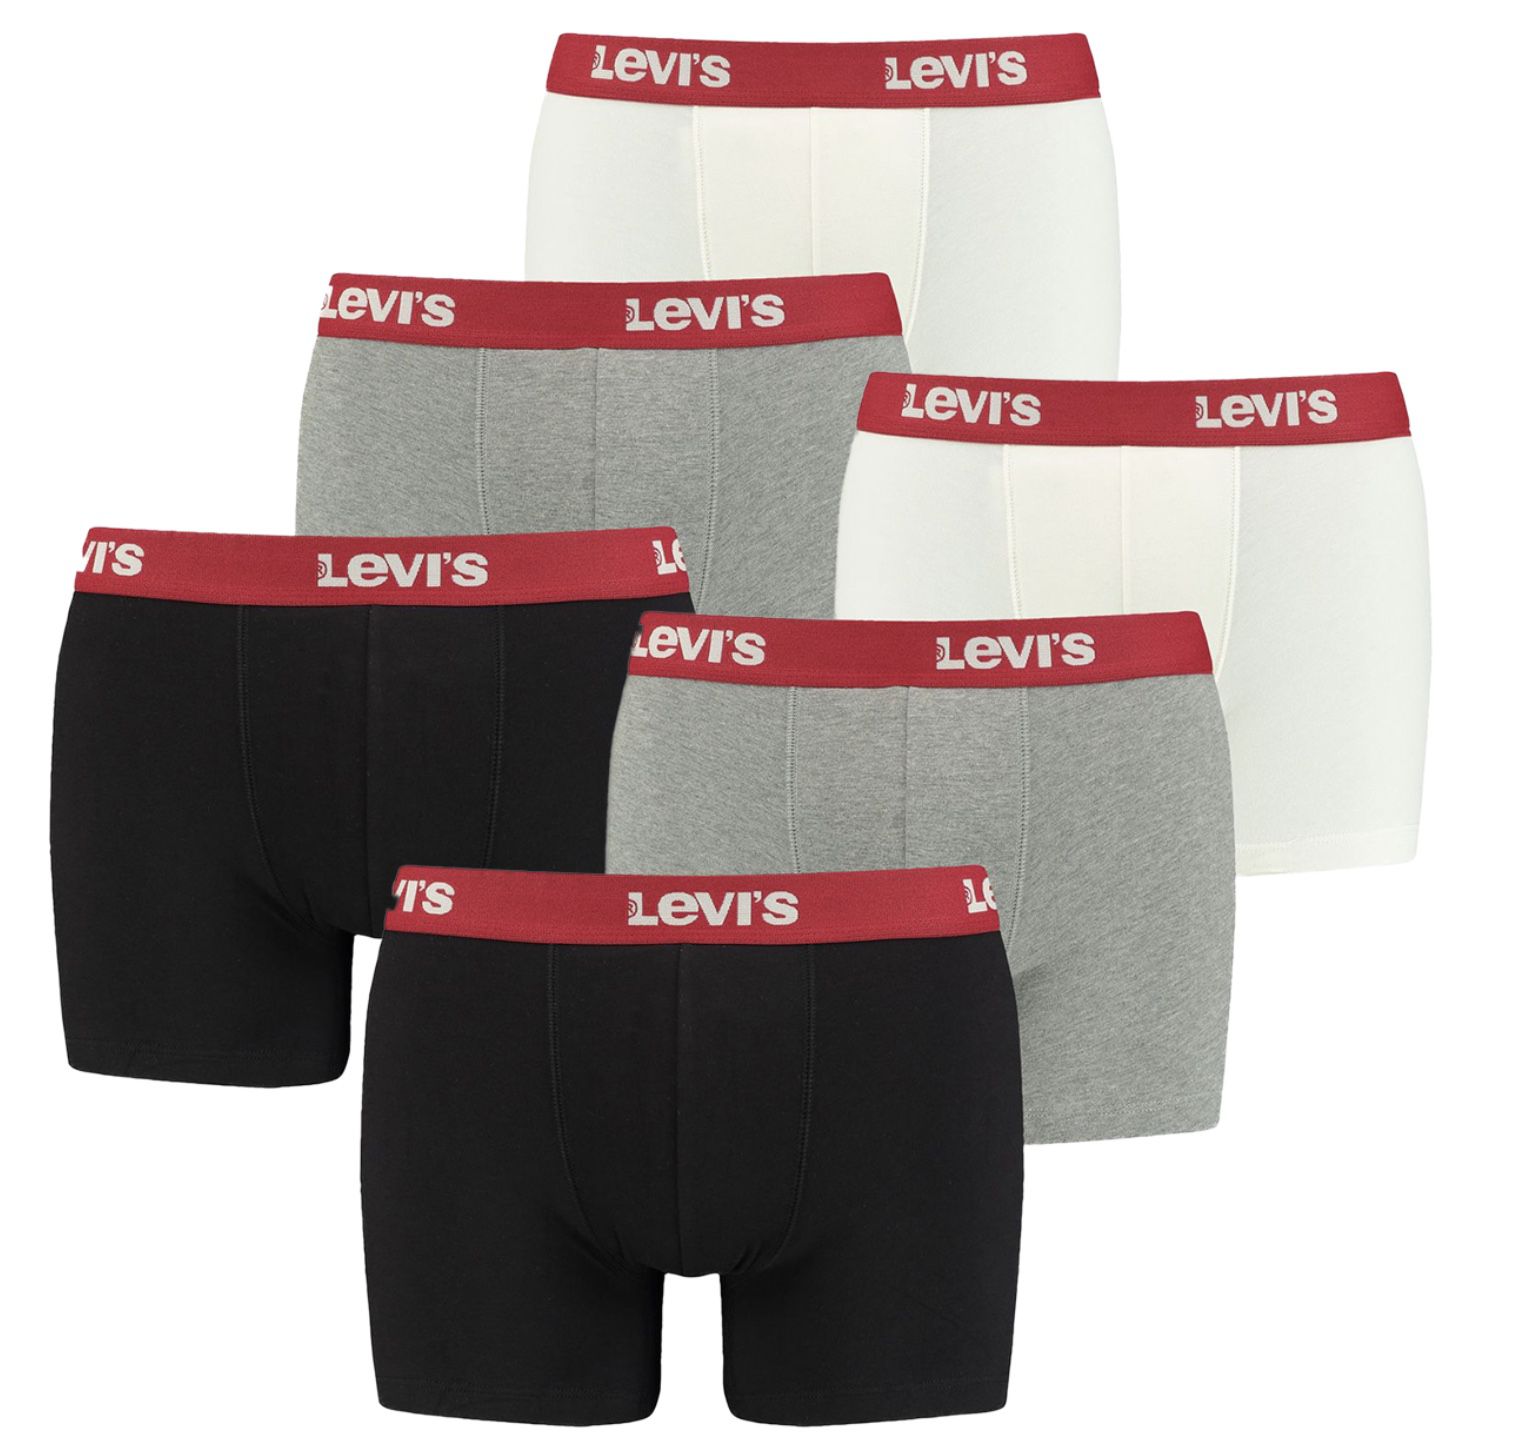 6er Pack Levi&#8217;s Boxershorts in vielen Farben oder gemischt für 33€ (statt 47€) oder 8er Pack für 42€